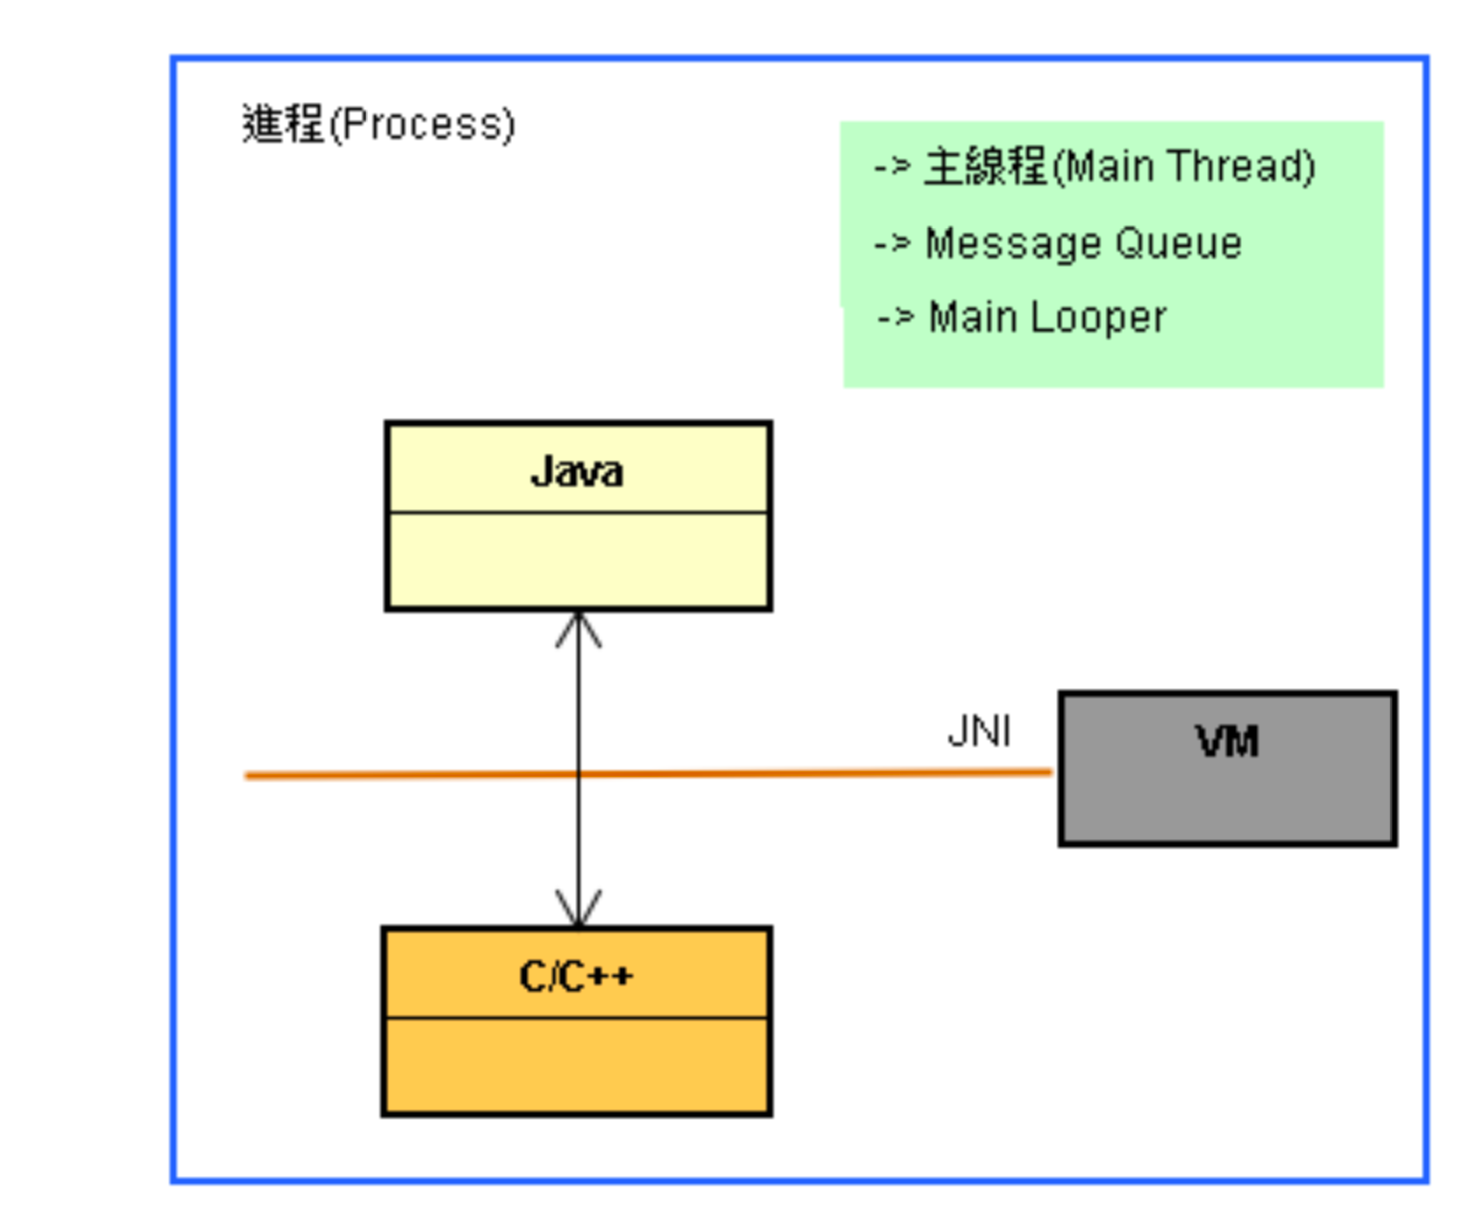 每一进程有:一个VM对象、主线程、MQ和Looper